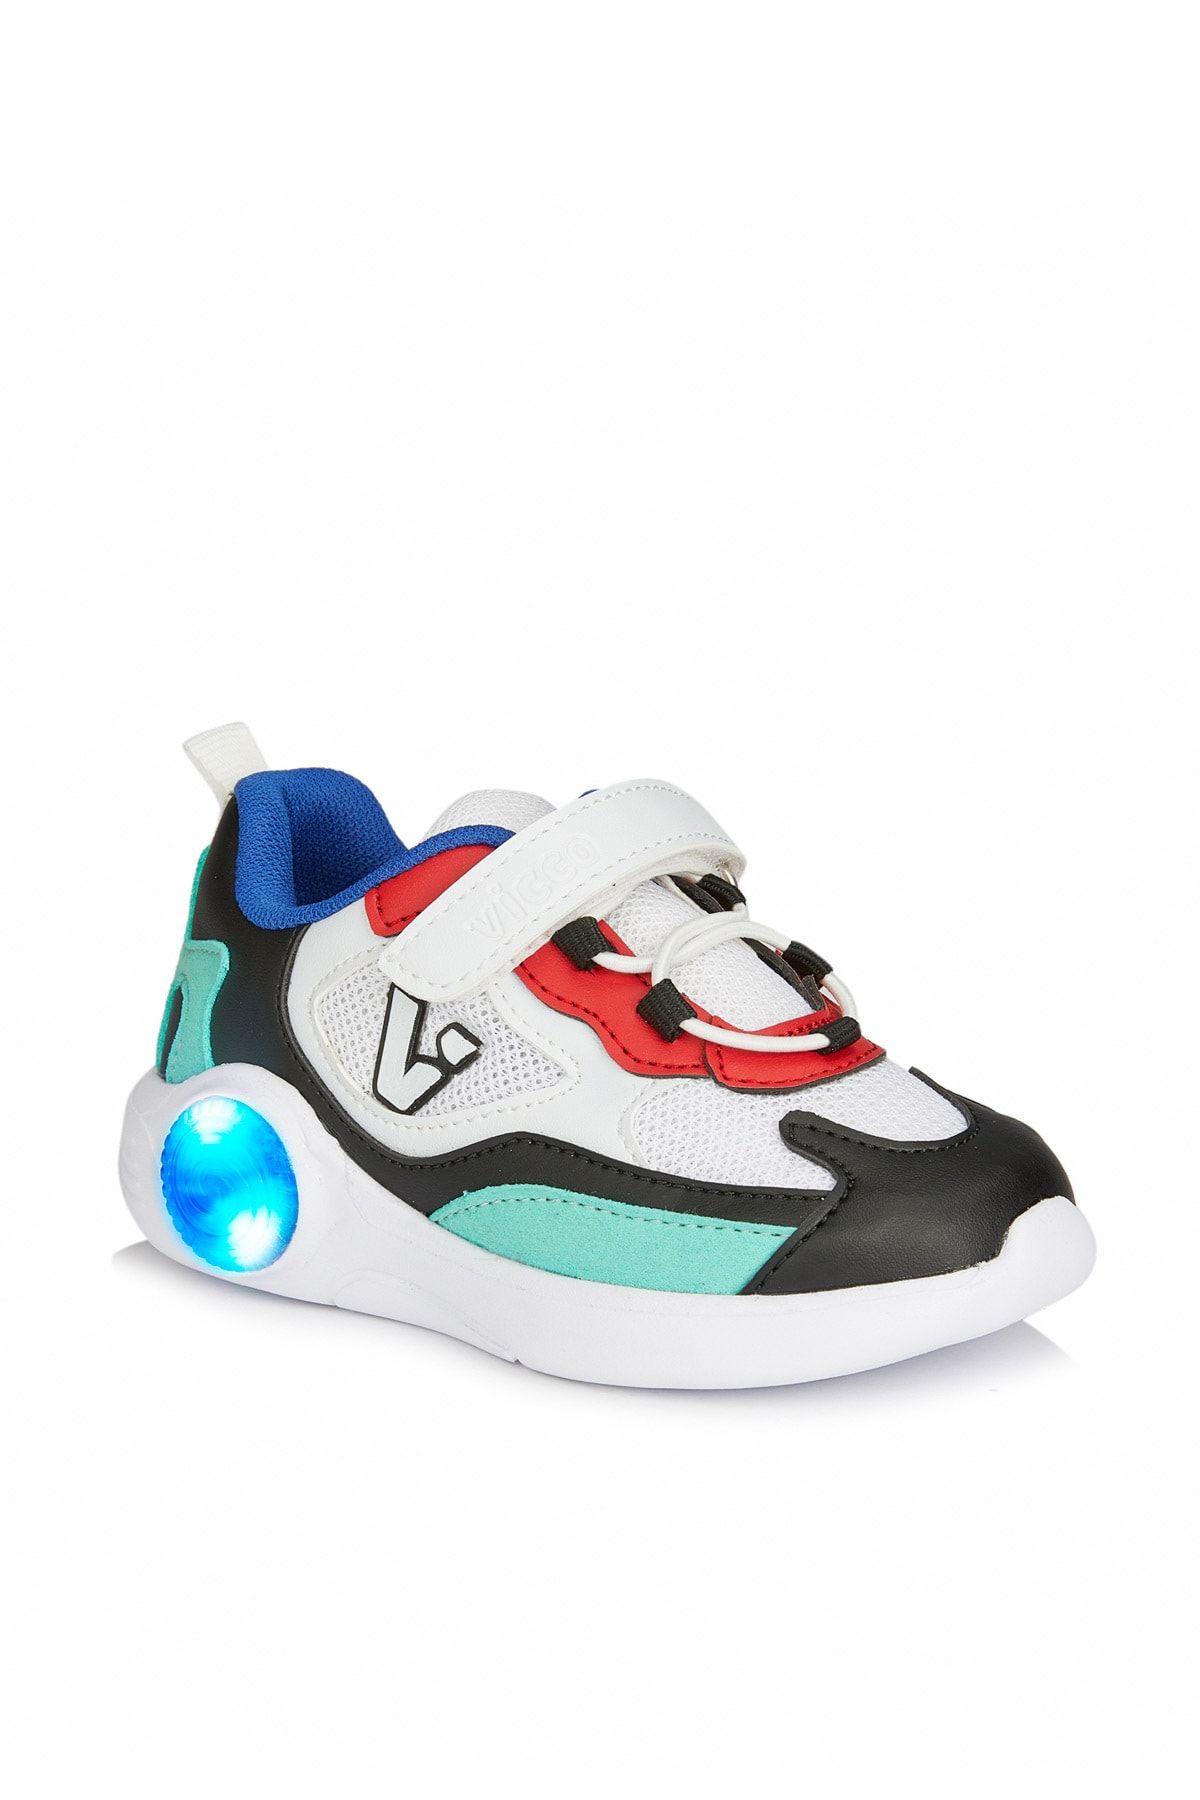 Vicco Yoda Işıklı Unisex Bebe Beyaz/siyah Spor Ayakkabı